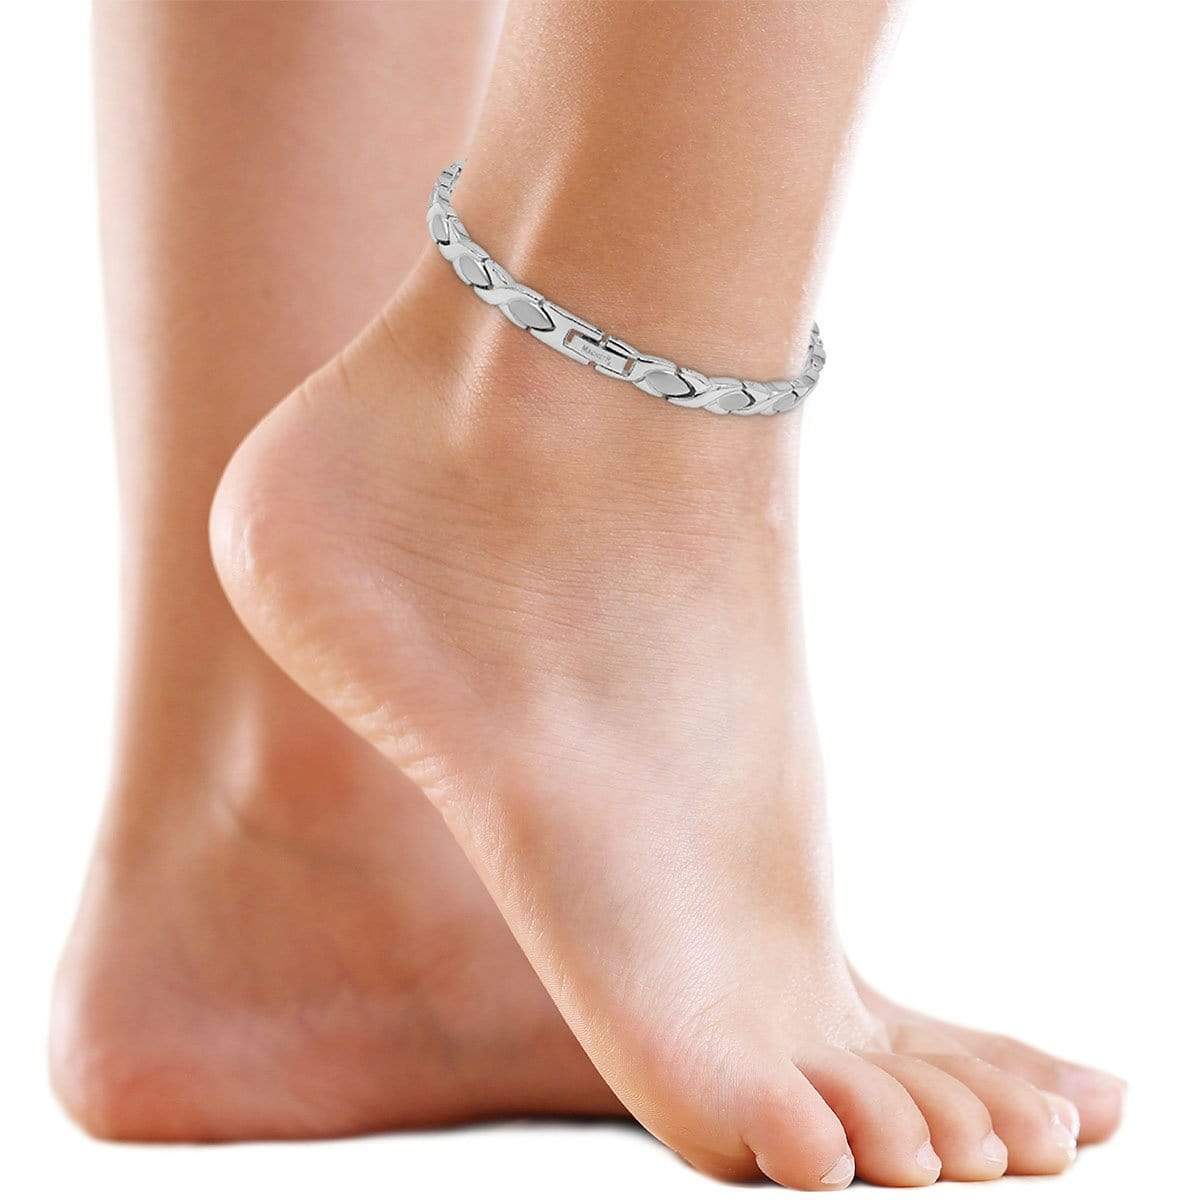 Προϊόντα ankle bracelet beads foot chain magnetic therapy | Zipy - Απλές  αγορές από AliExpress